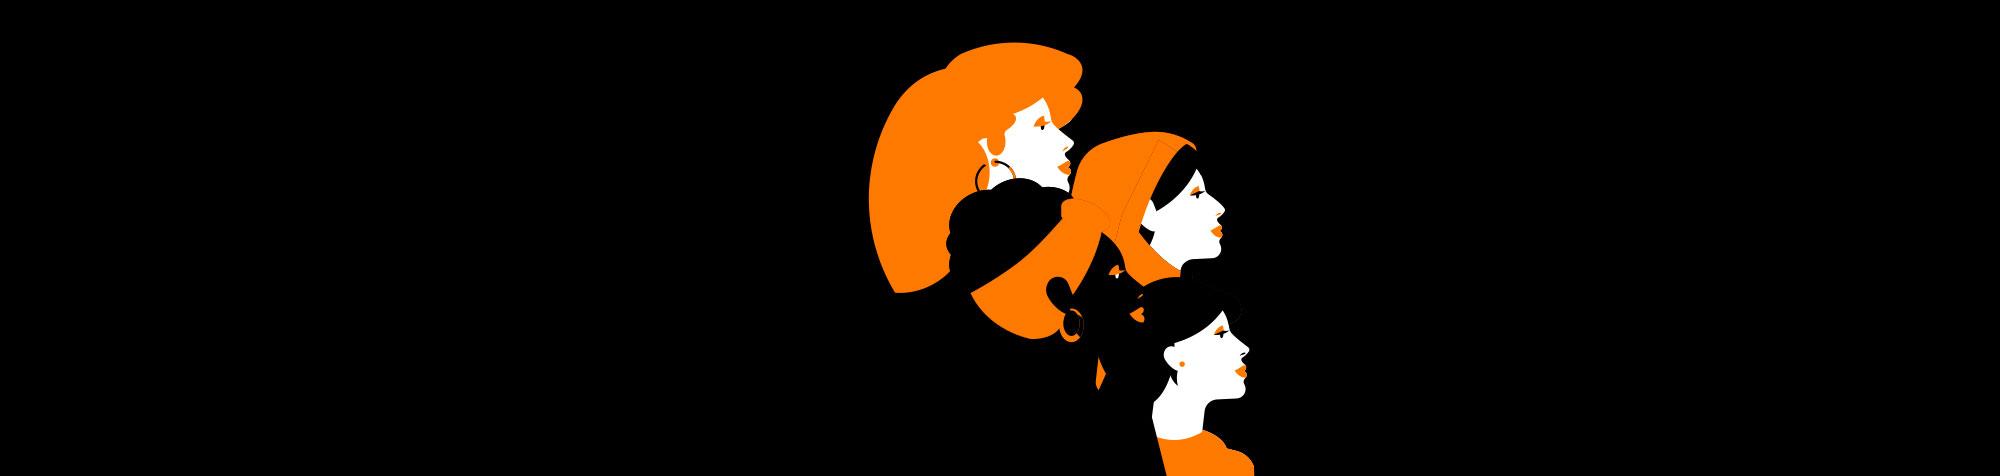 Le 8 mars 2021, Orange donne la parole aux femmes – le Replay !!!